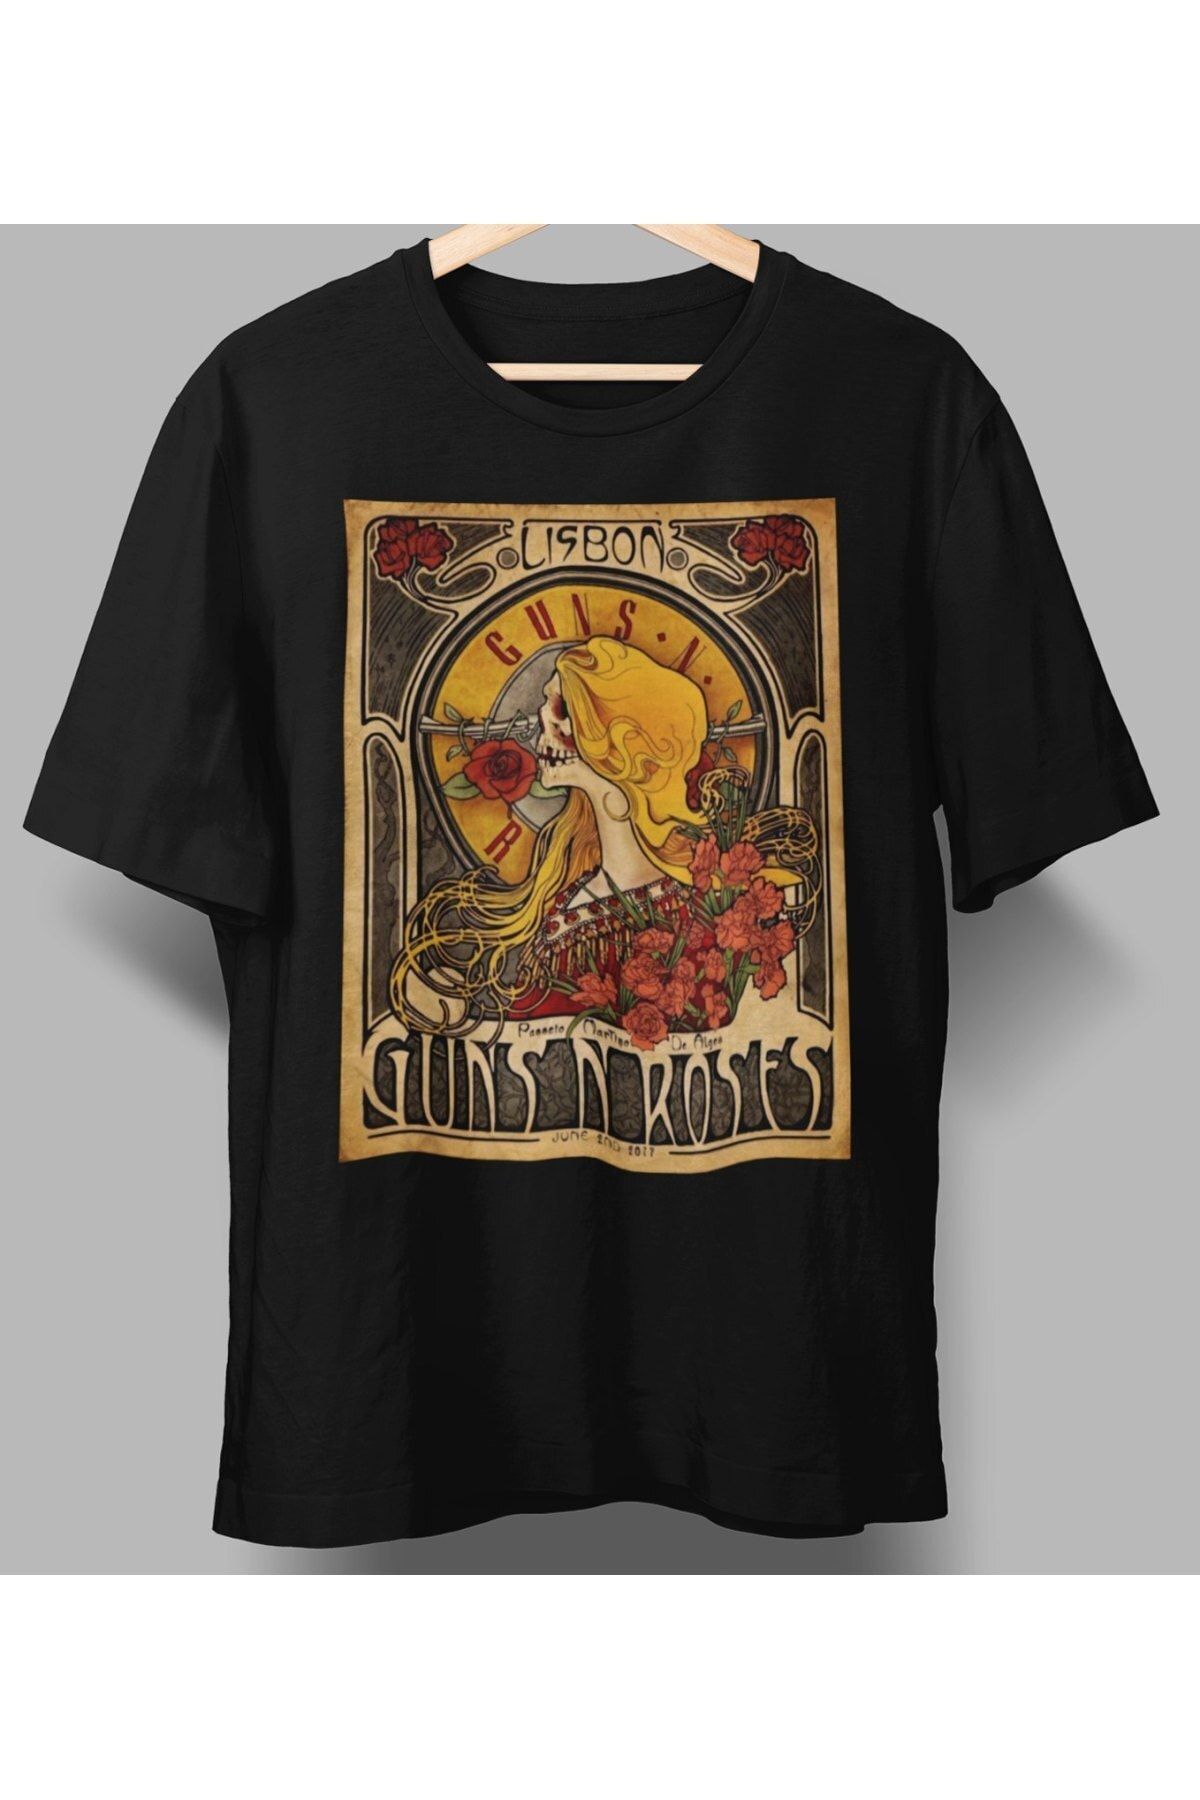 playbackmoda rock poster Guns and Roses  dizayn tasarım baskılı tişört